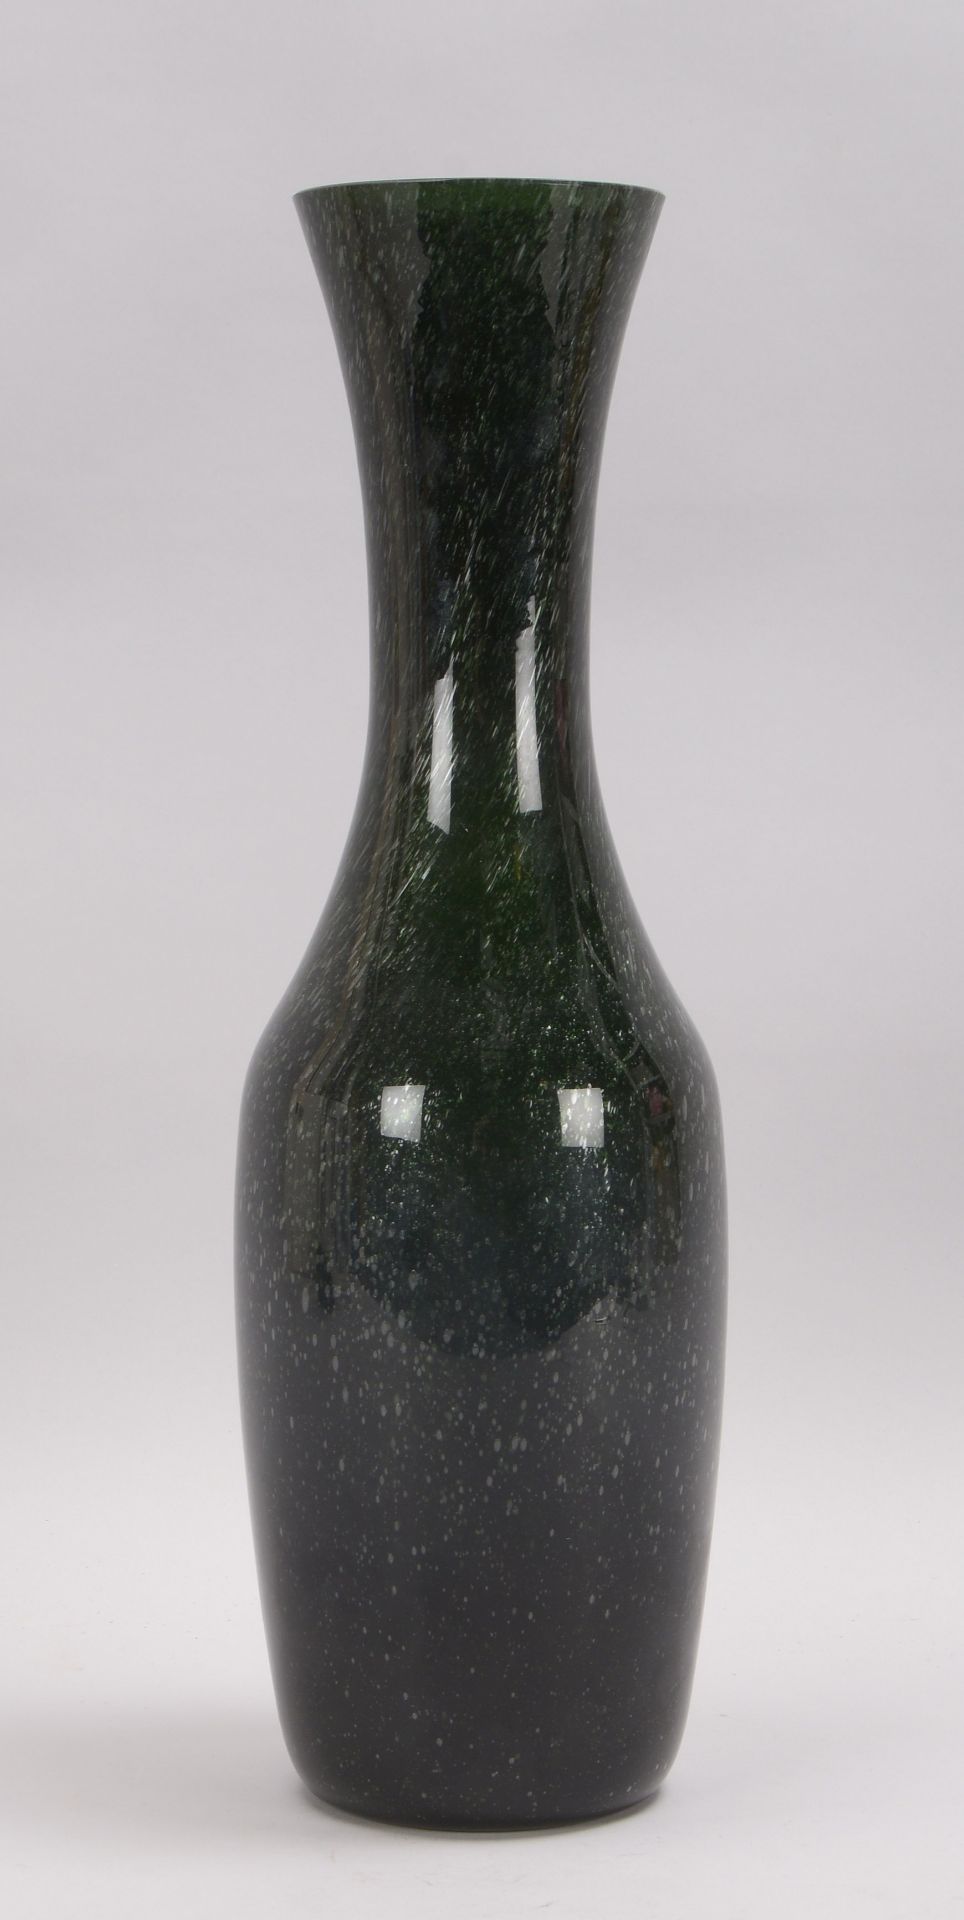 Venini, Designer-Vase, 'Ruigade', Modellnr. '78400', dunkelgrünes Glas mit Luftblaseneinschlüssen, m